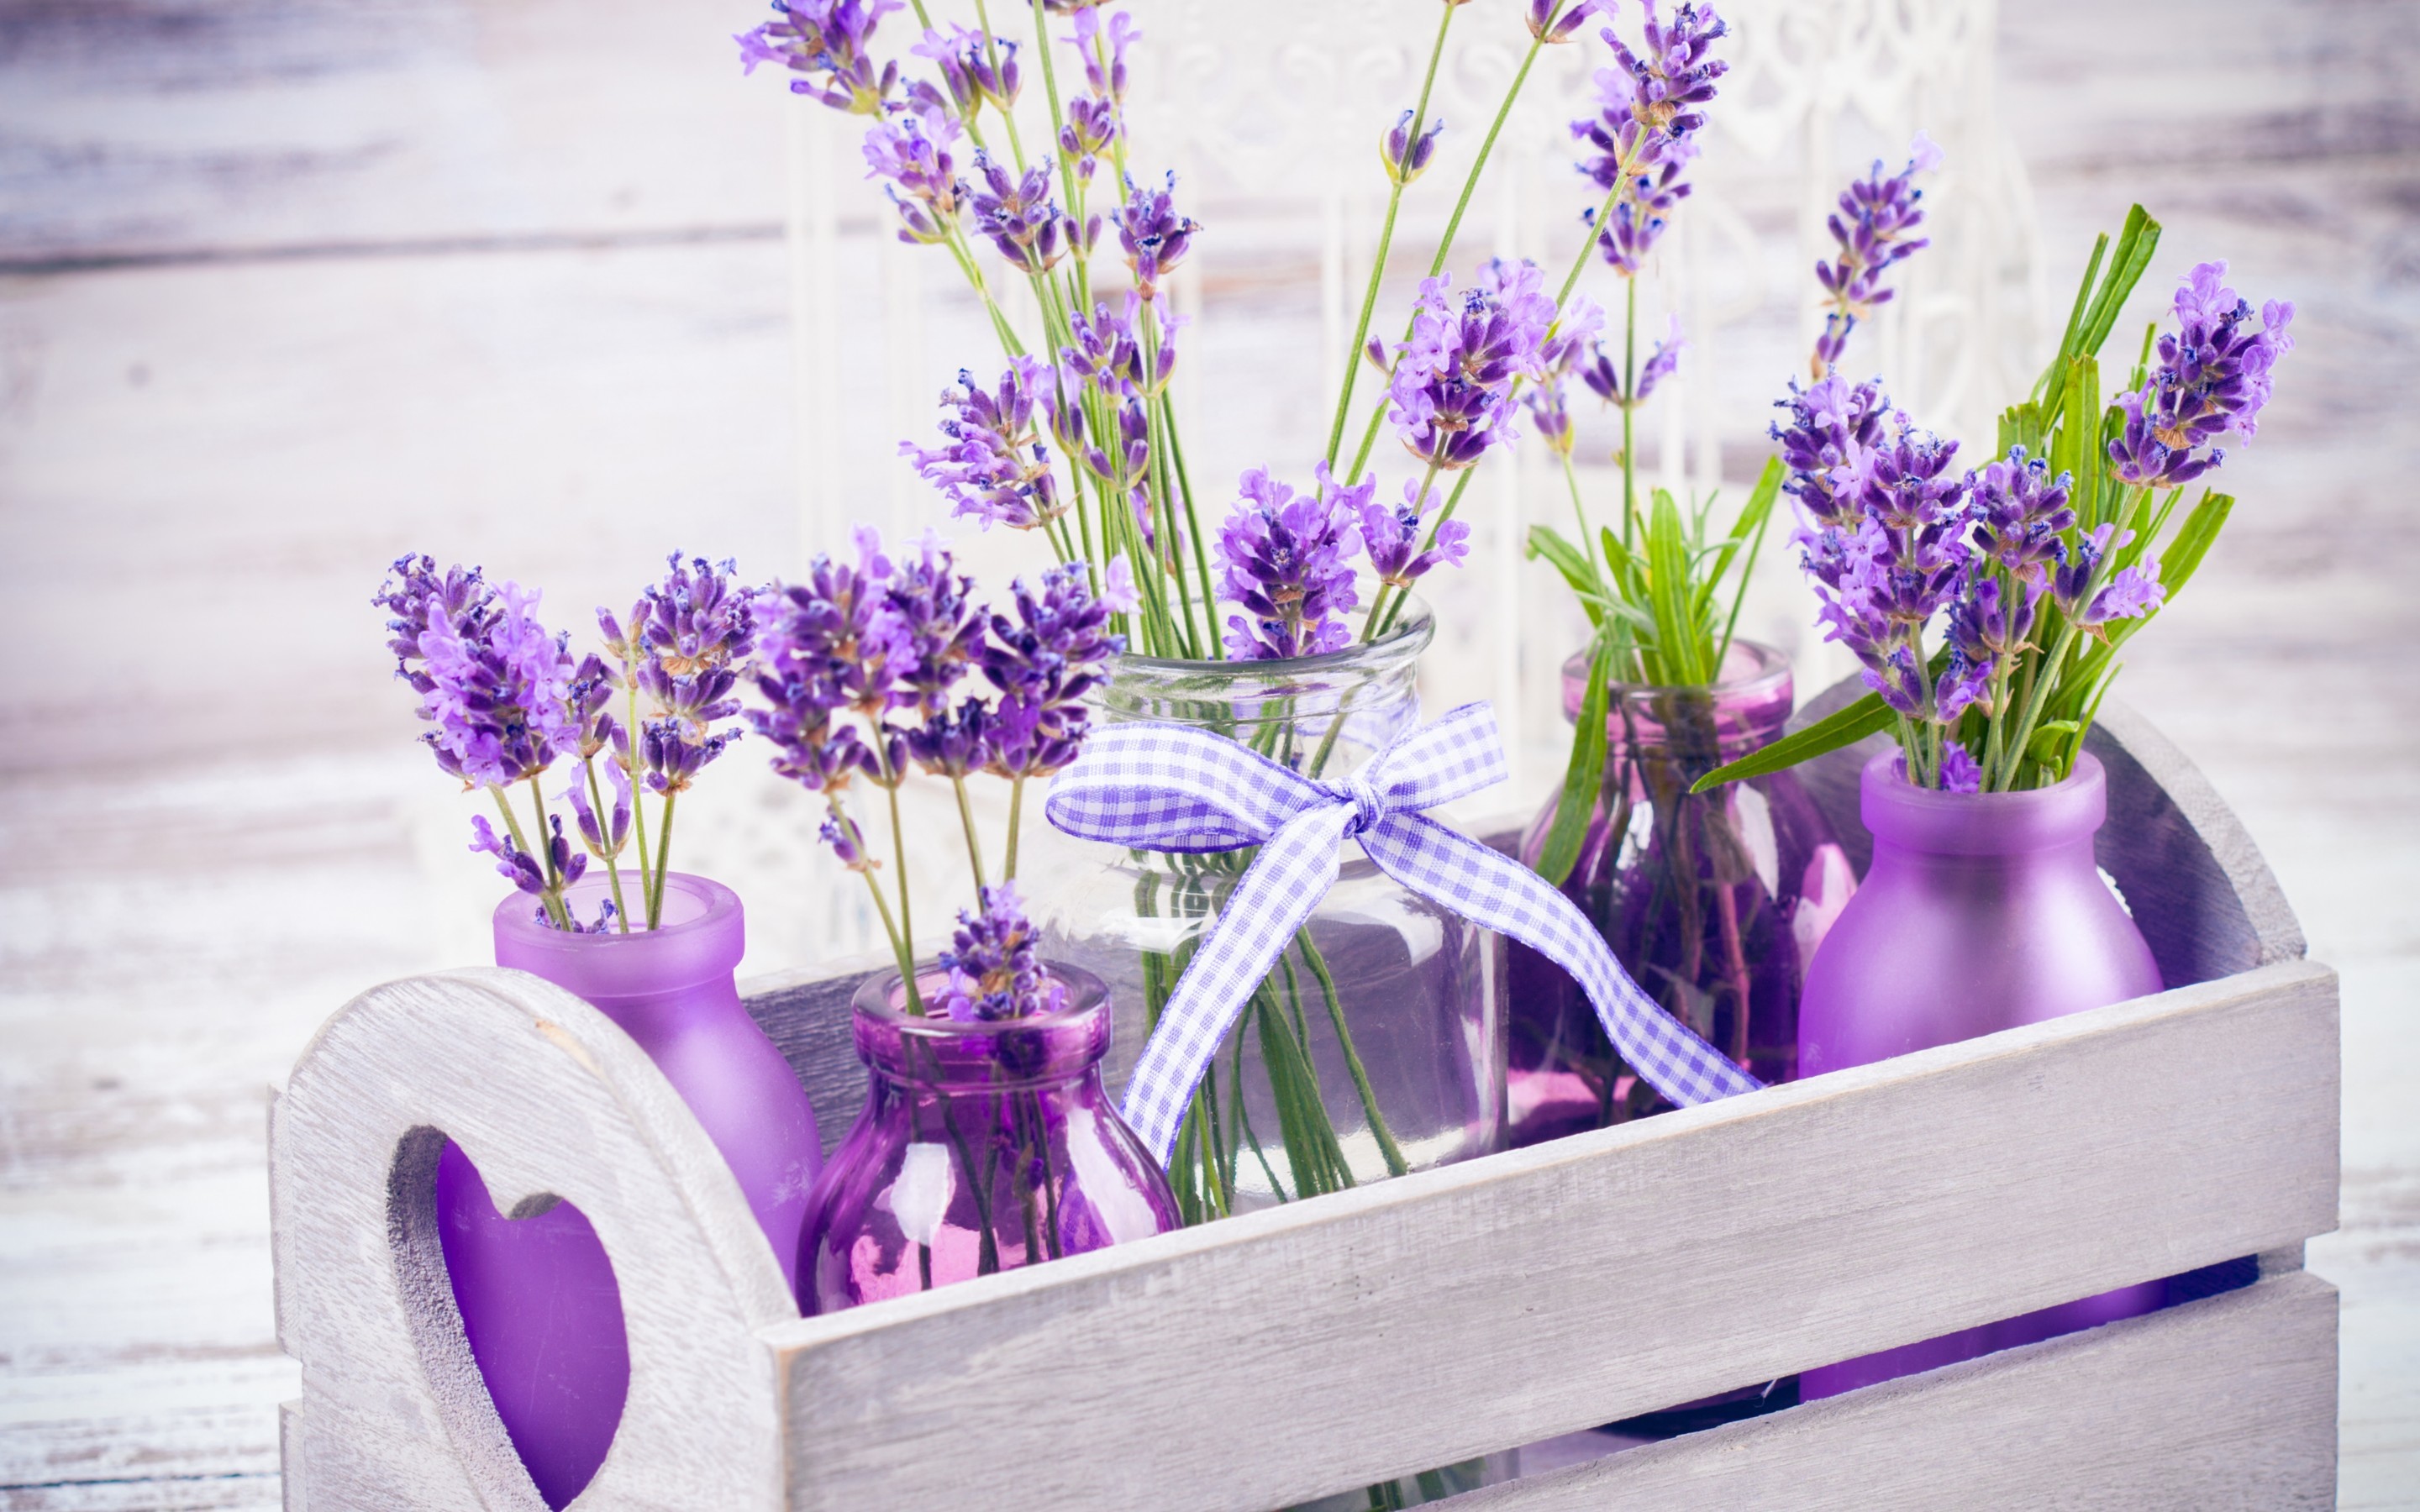 Lavender: Lavender là một loại cây có mùi hương dịu nhẹ và rất được yêu thích. Với màu tím tuyệt đẹp và những bông hoa xinh đẹp, lavender mang lại cho chúng ta sự thanh tịnh và cảm giác thư giãn. Hãy xem những hình ảnh về lavender để cảm nhận tất cả những điều tuyệt vời mà cây này mang lại nhé!